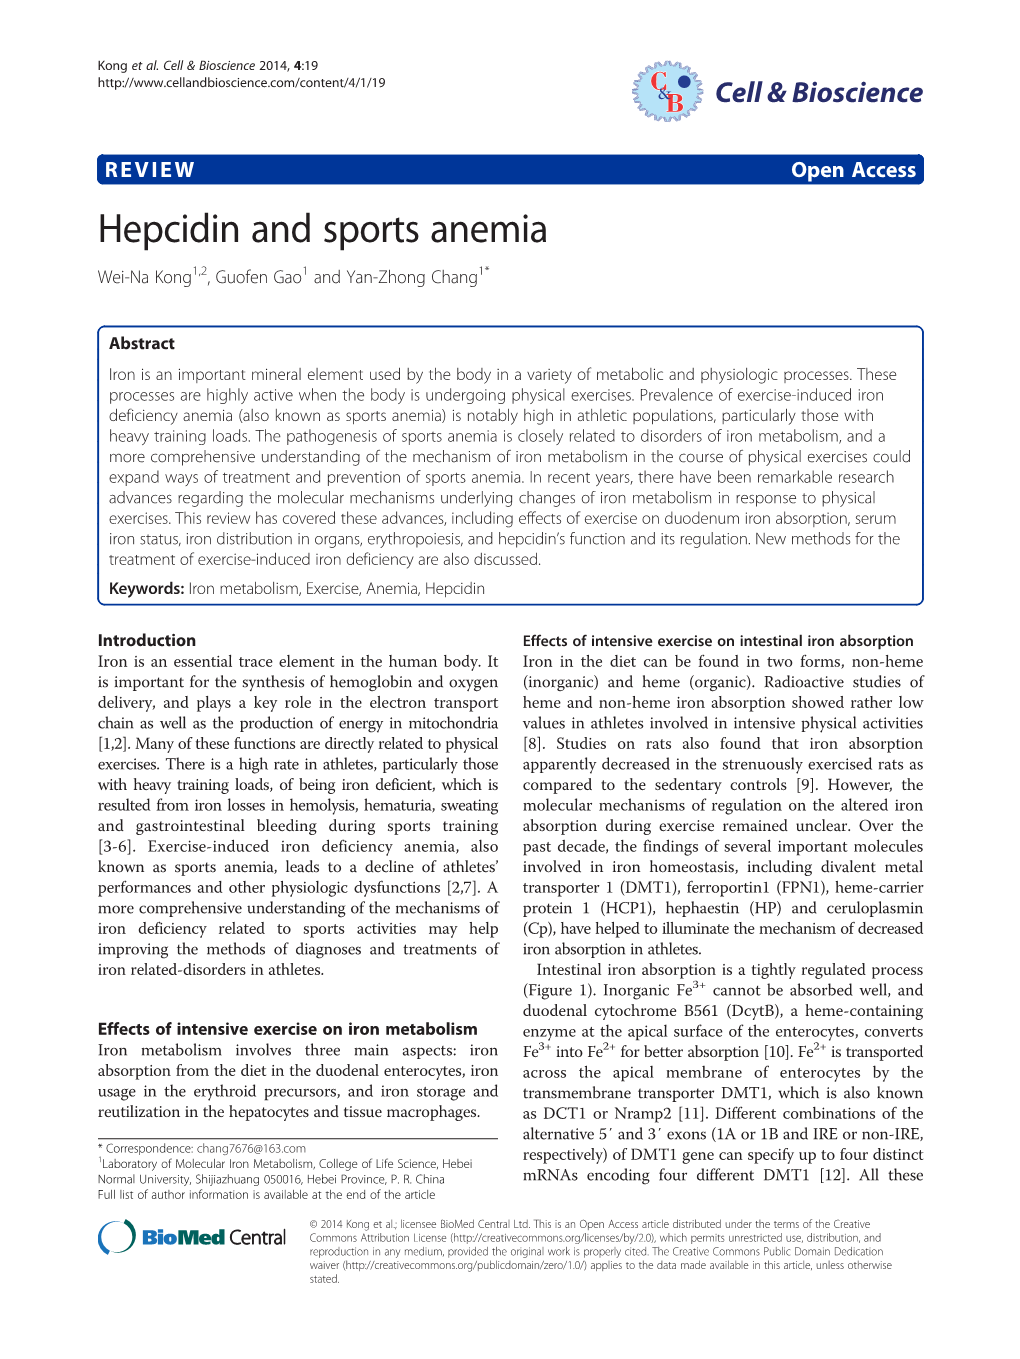 Hepcidin and Sports Anemia Wei-Na Kong1,2, Guofen Gao1 and Yan-Zhong Chang1*